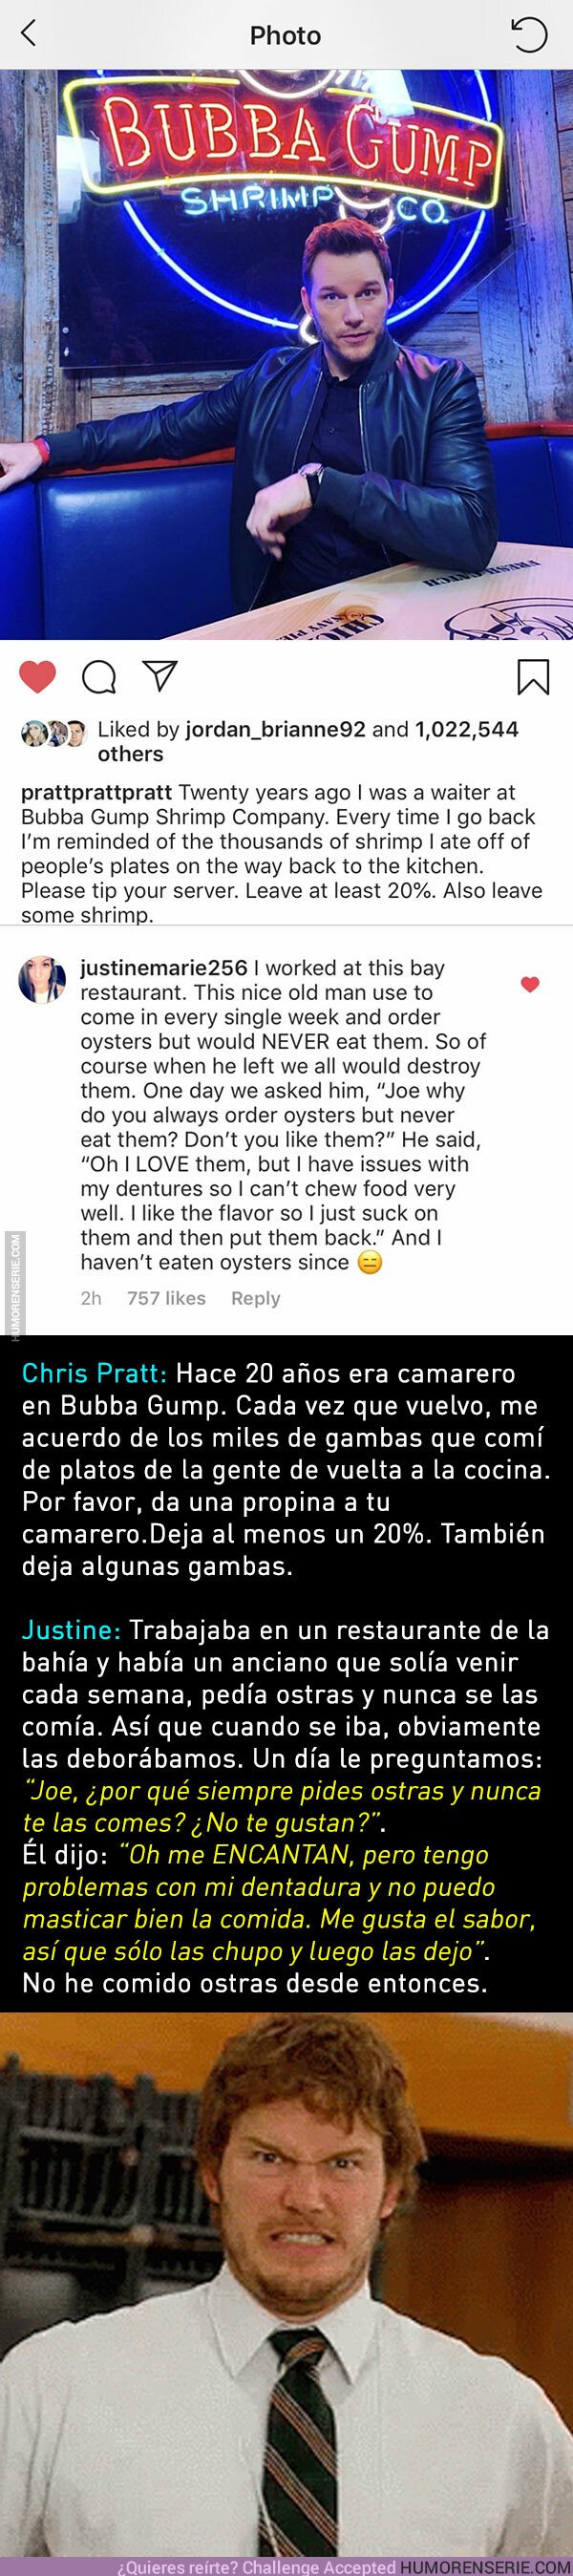 34893 - Esta respuesta a Chris Pratt te enseñará a no coger comida de los platos de los demás